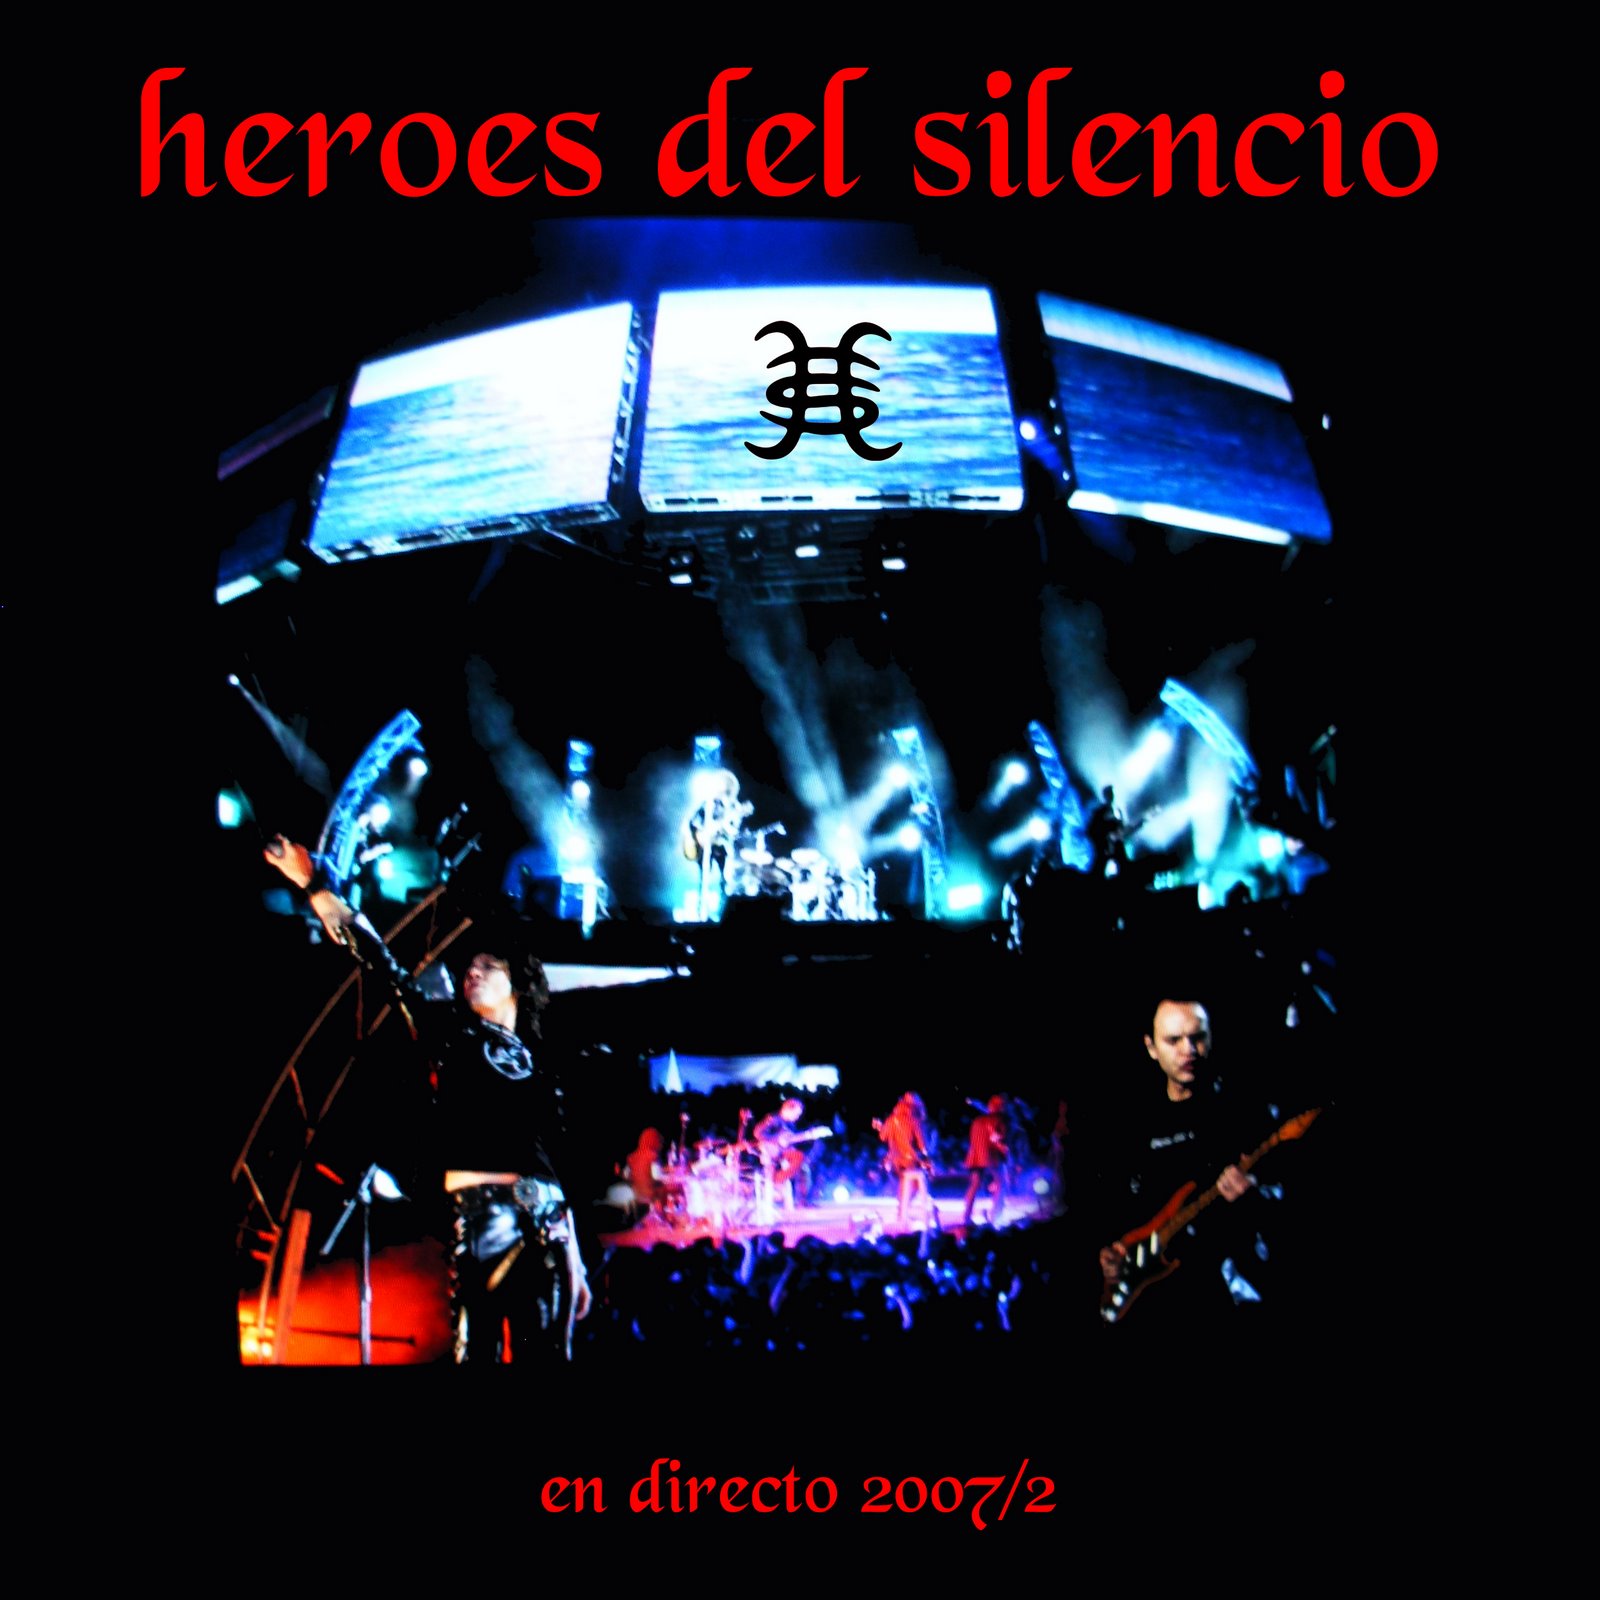 [guatemala+zona+heroes+del+silencio+portada.jpg]